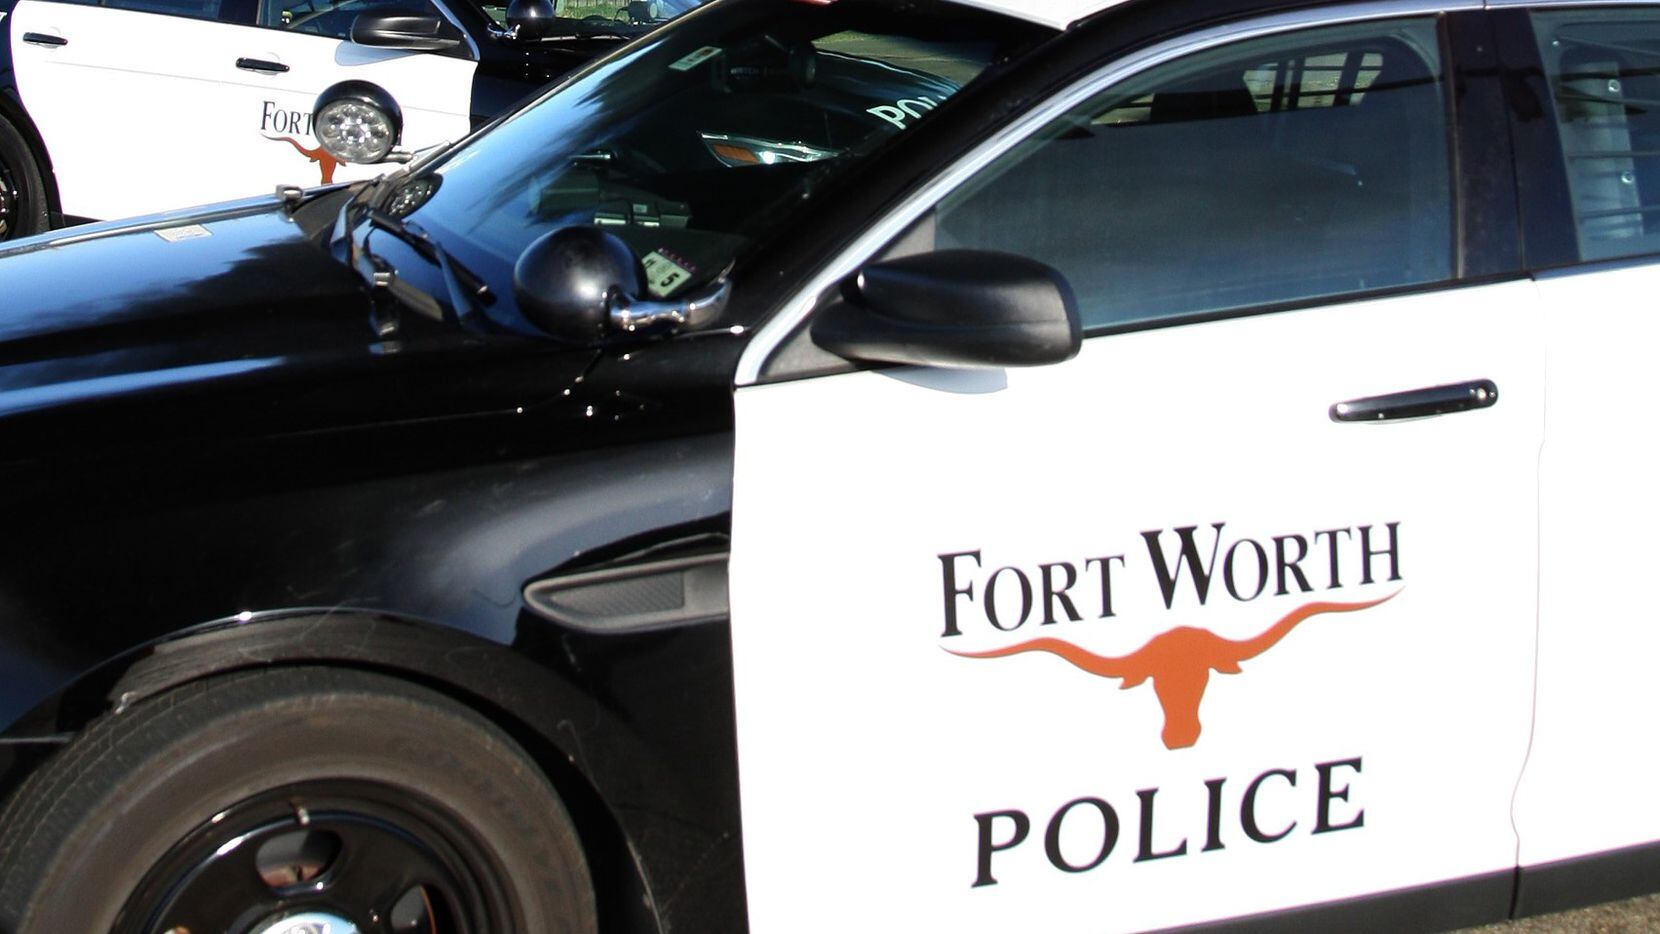 La policía de Fort Worth ordenó el cierre de las bibliotecas de la ciudad por amenaza de bomba.